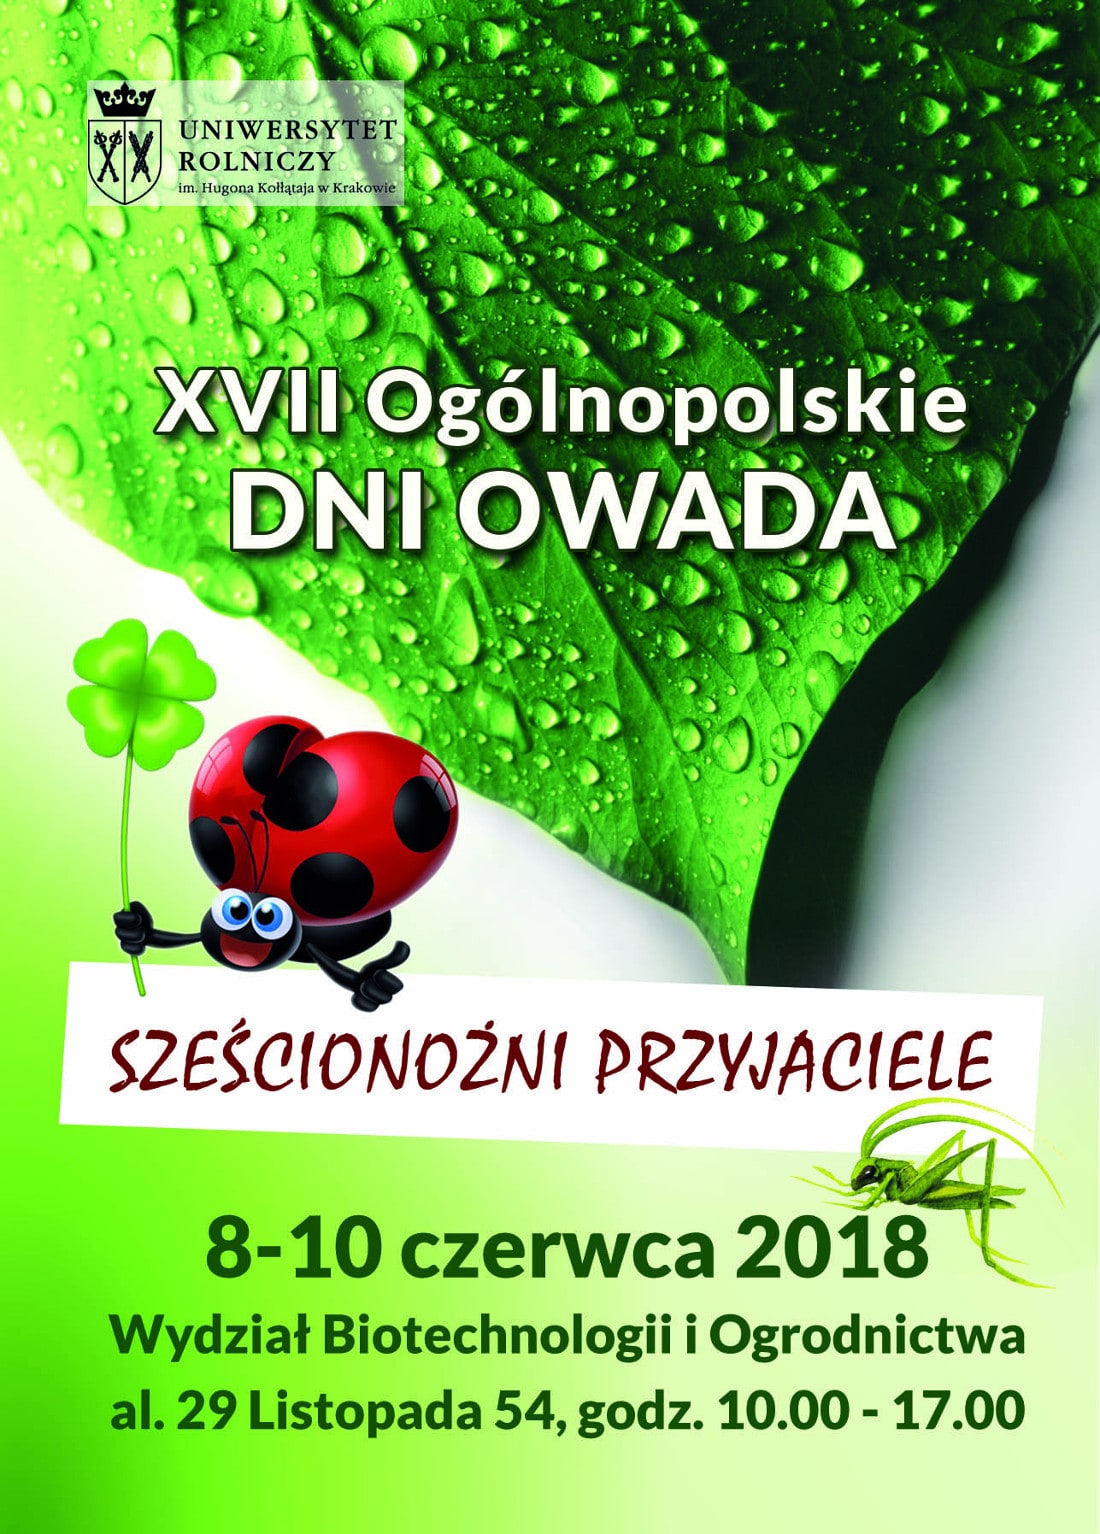 Ogólnopolskie Dni Owada odbędzie się w dniach 8-10 czerwca.